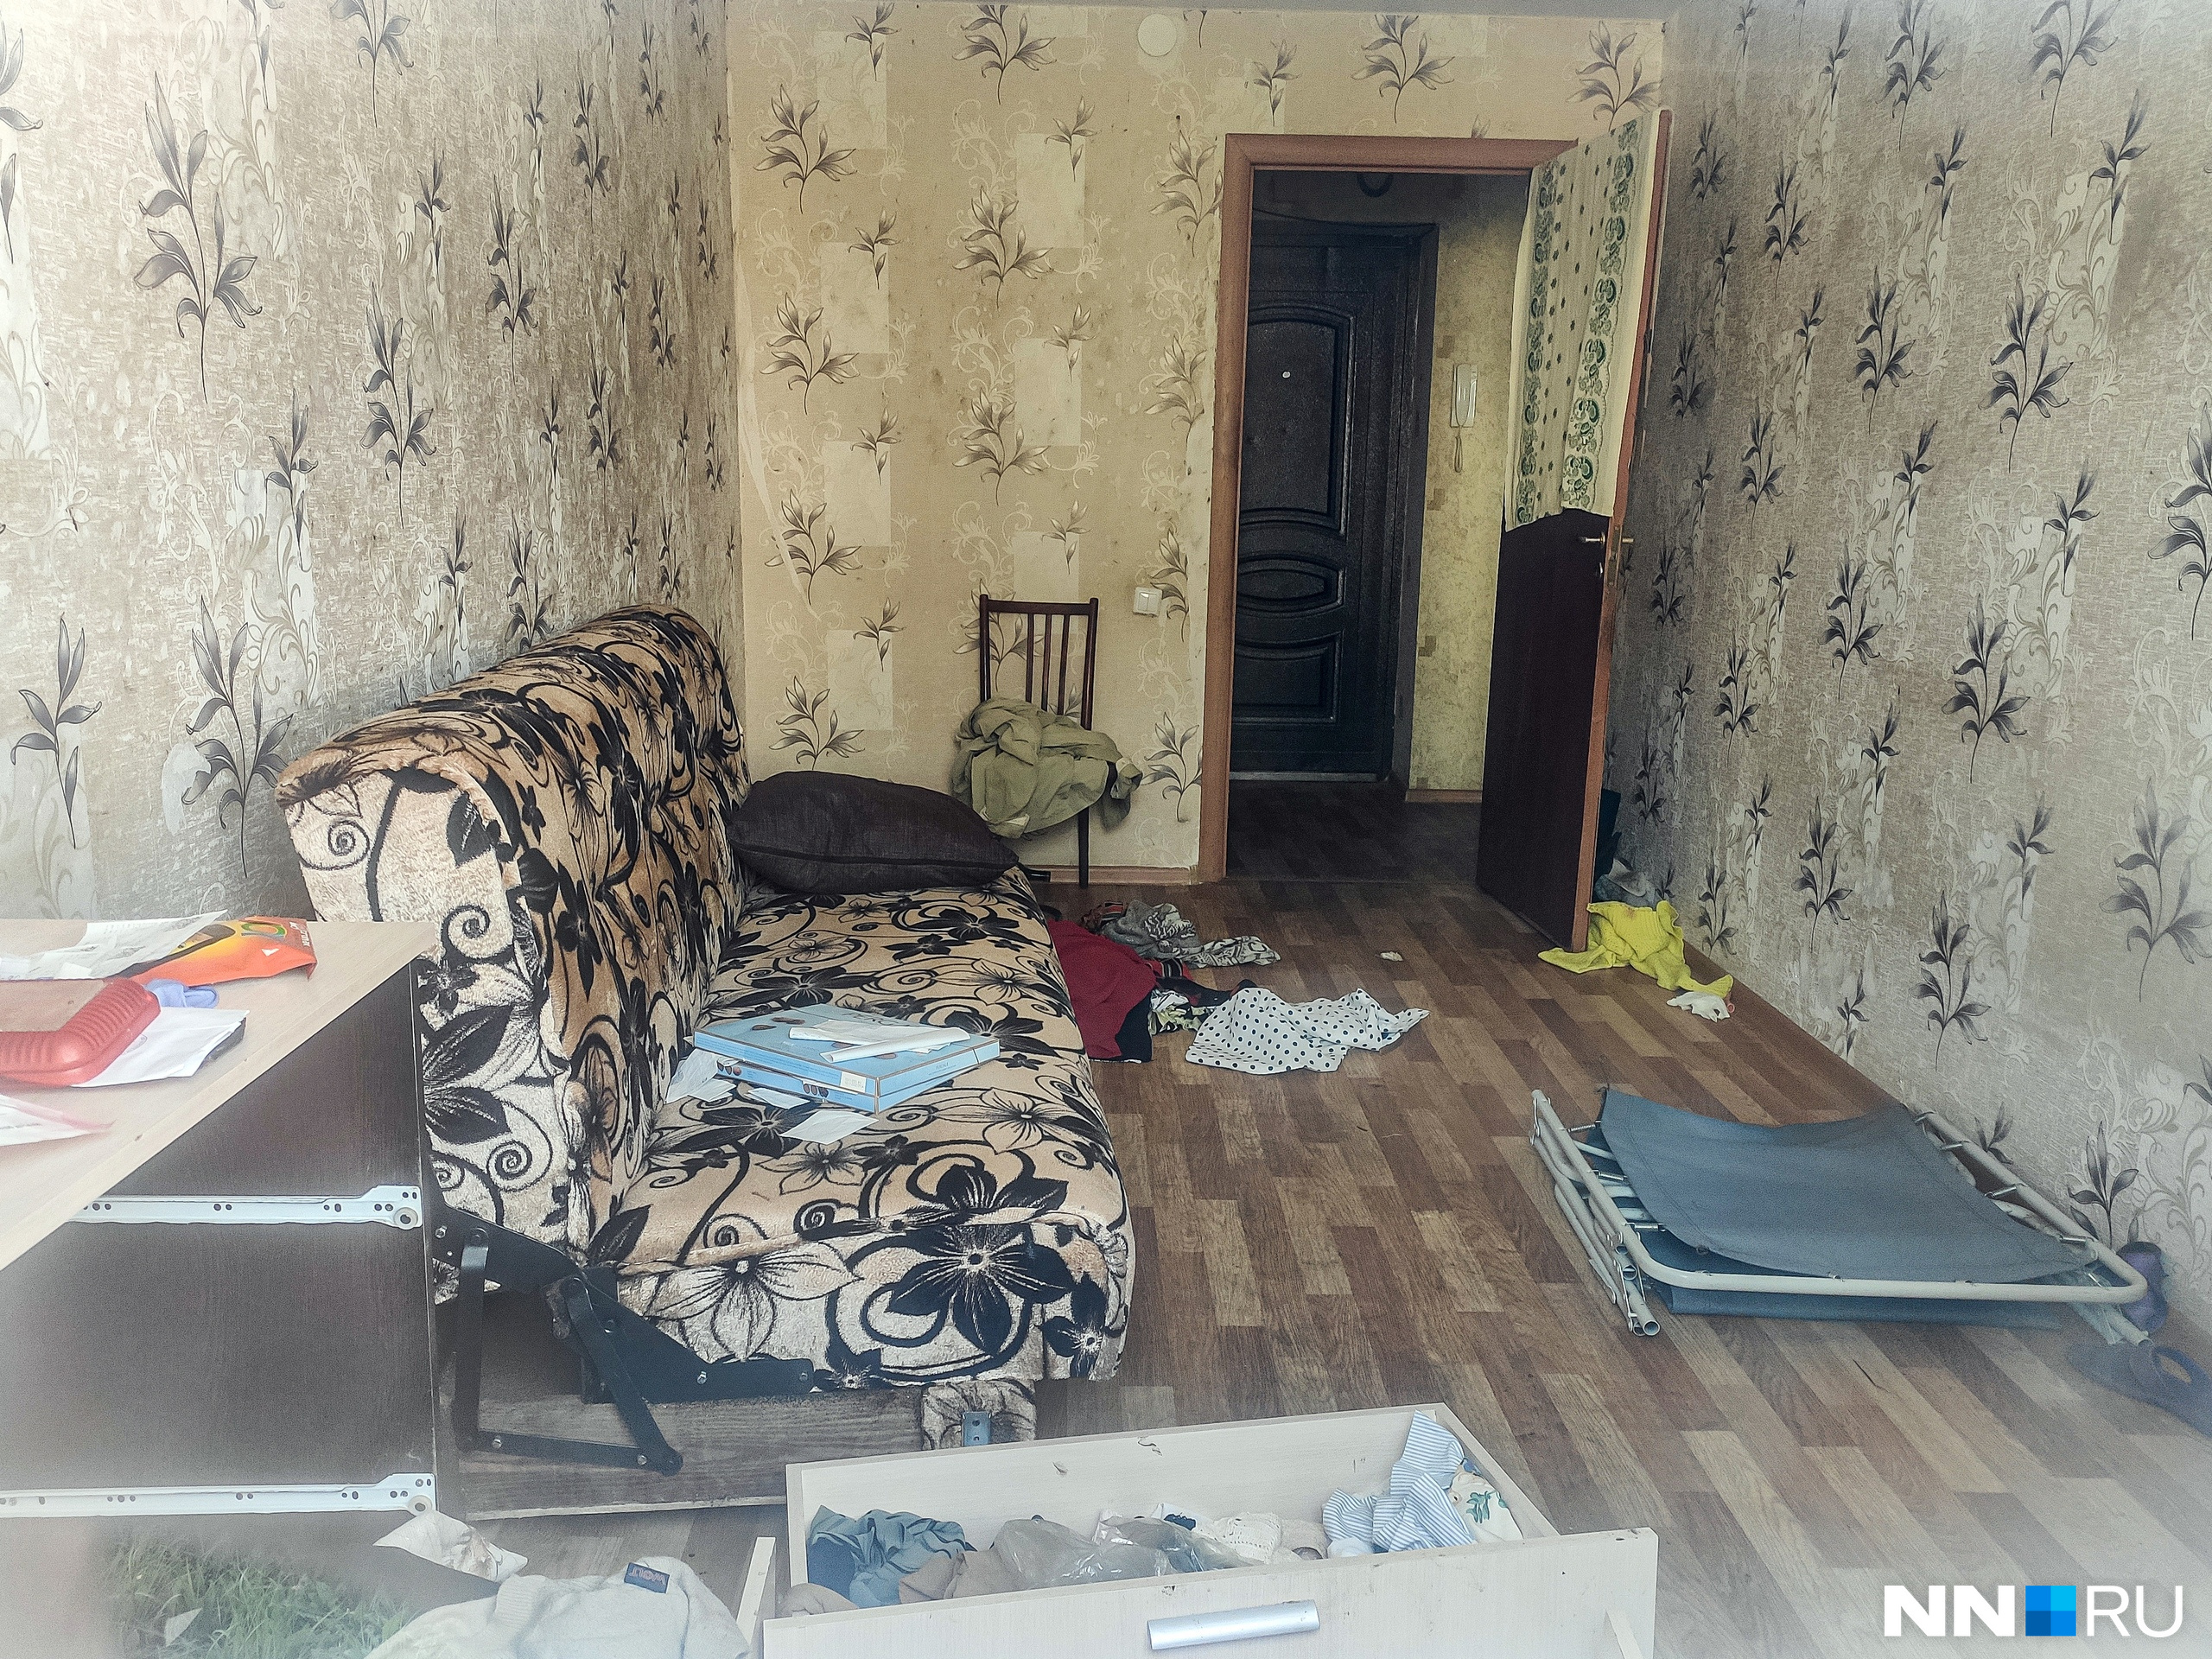 Вид квартиры, в которой нашли тело <nobr class="_">73-летней</nobr> пенсионерки